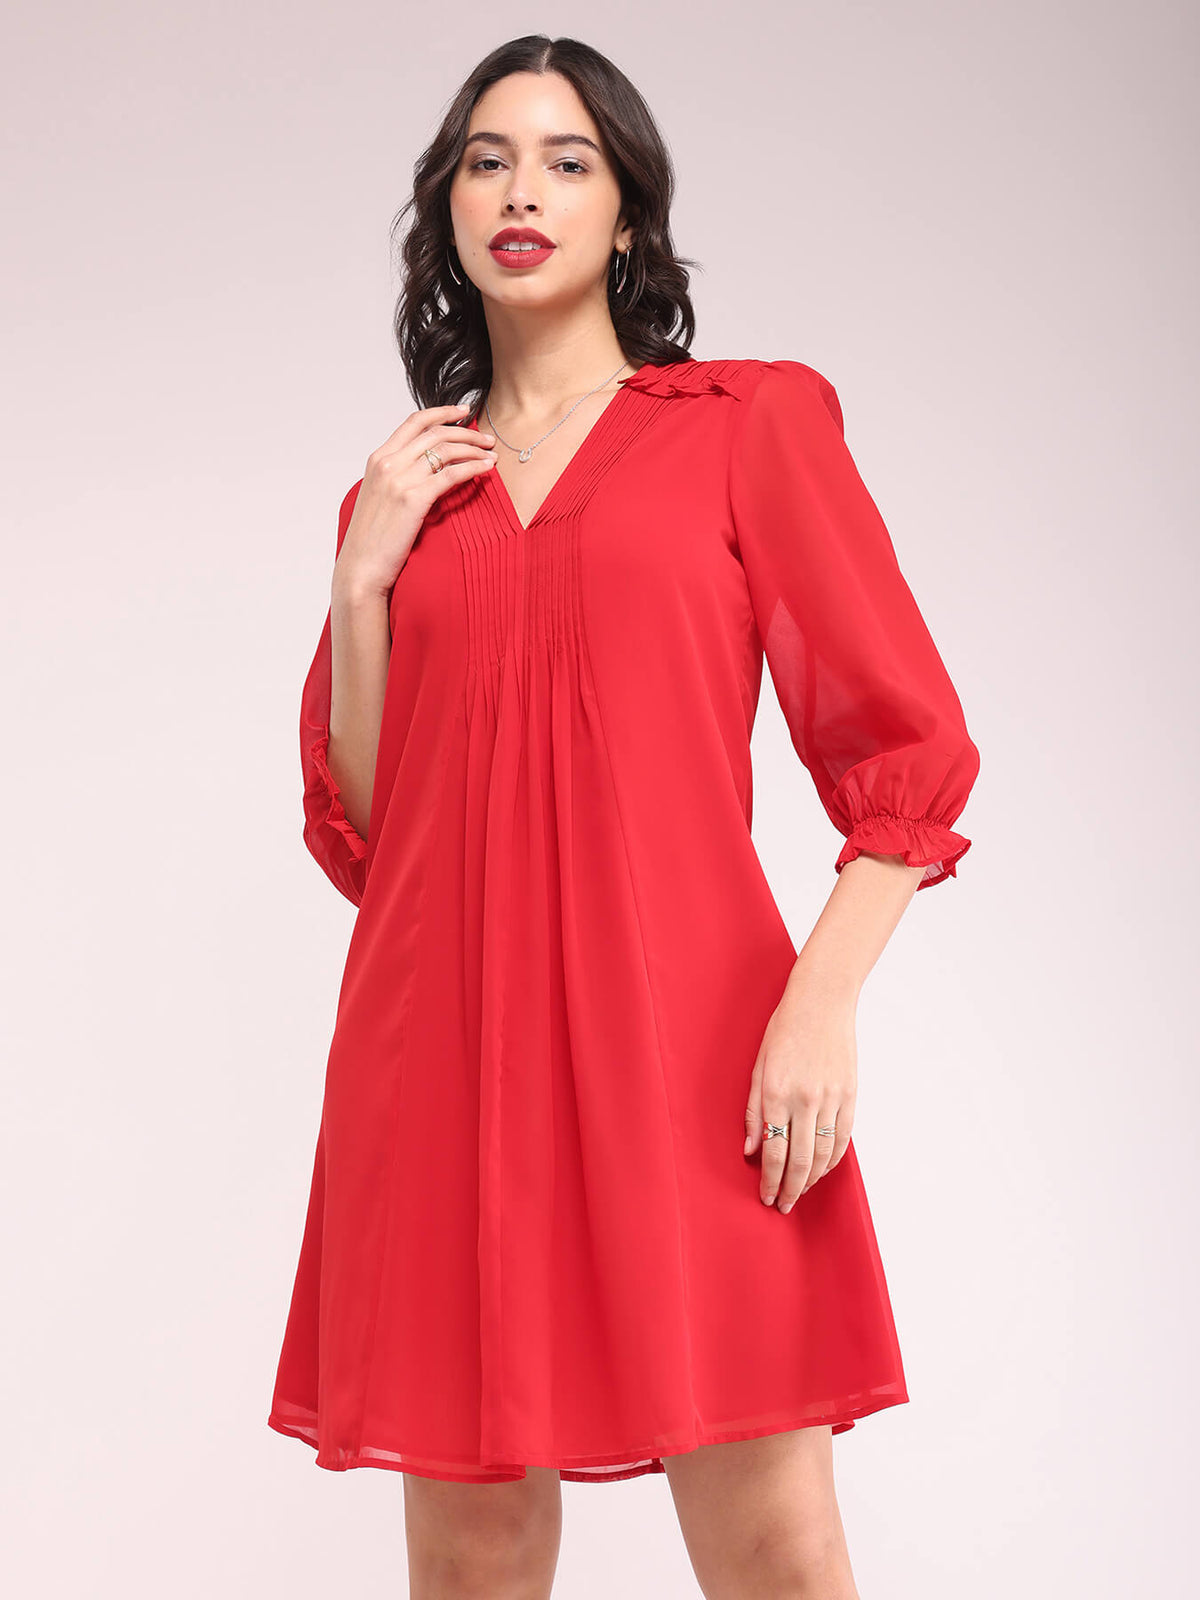 Pintuck A-line Dress - Red